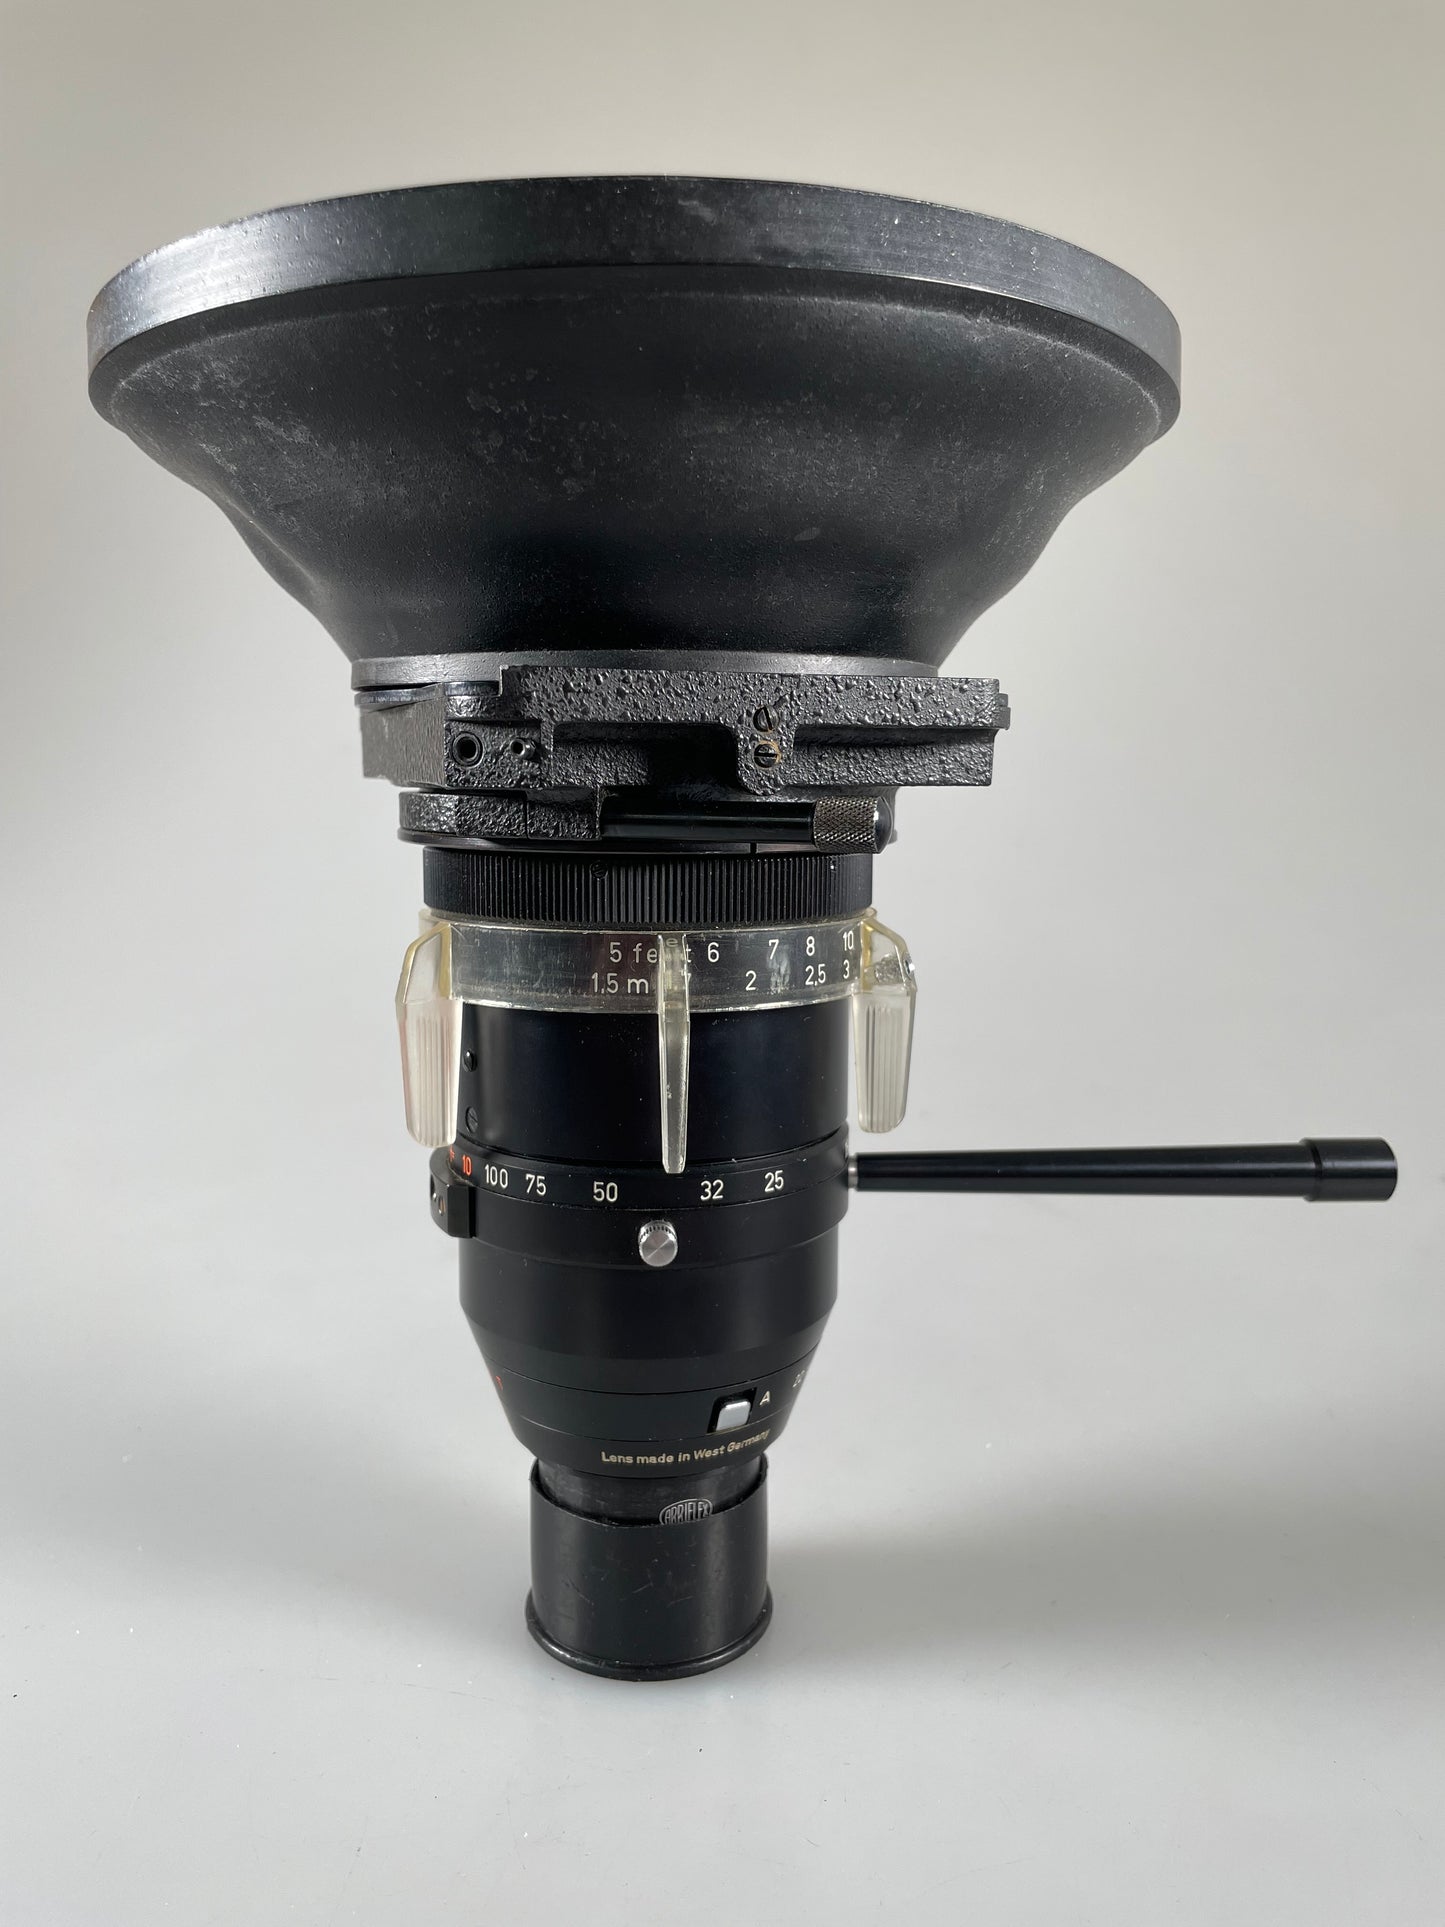 Carl Zeiss, 10-100mm F2.8 Vario Sonnar Arriflex mount lens